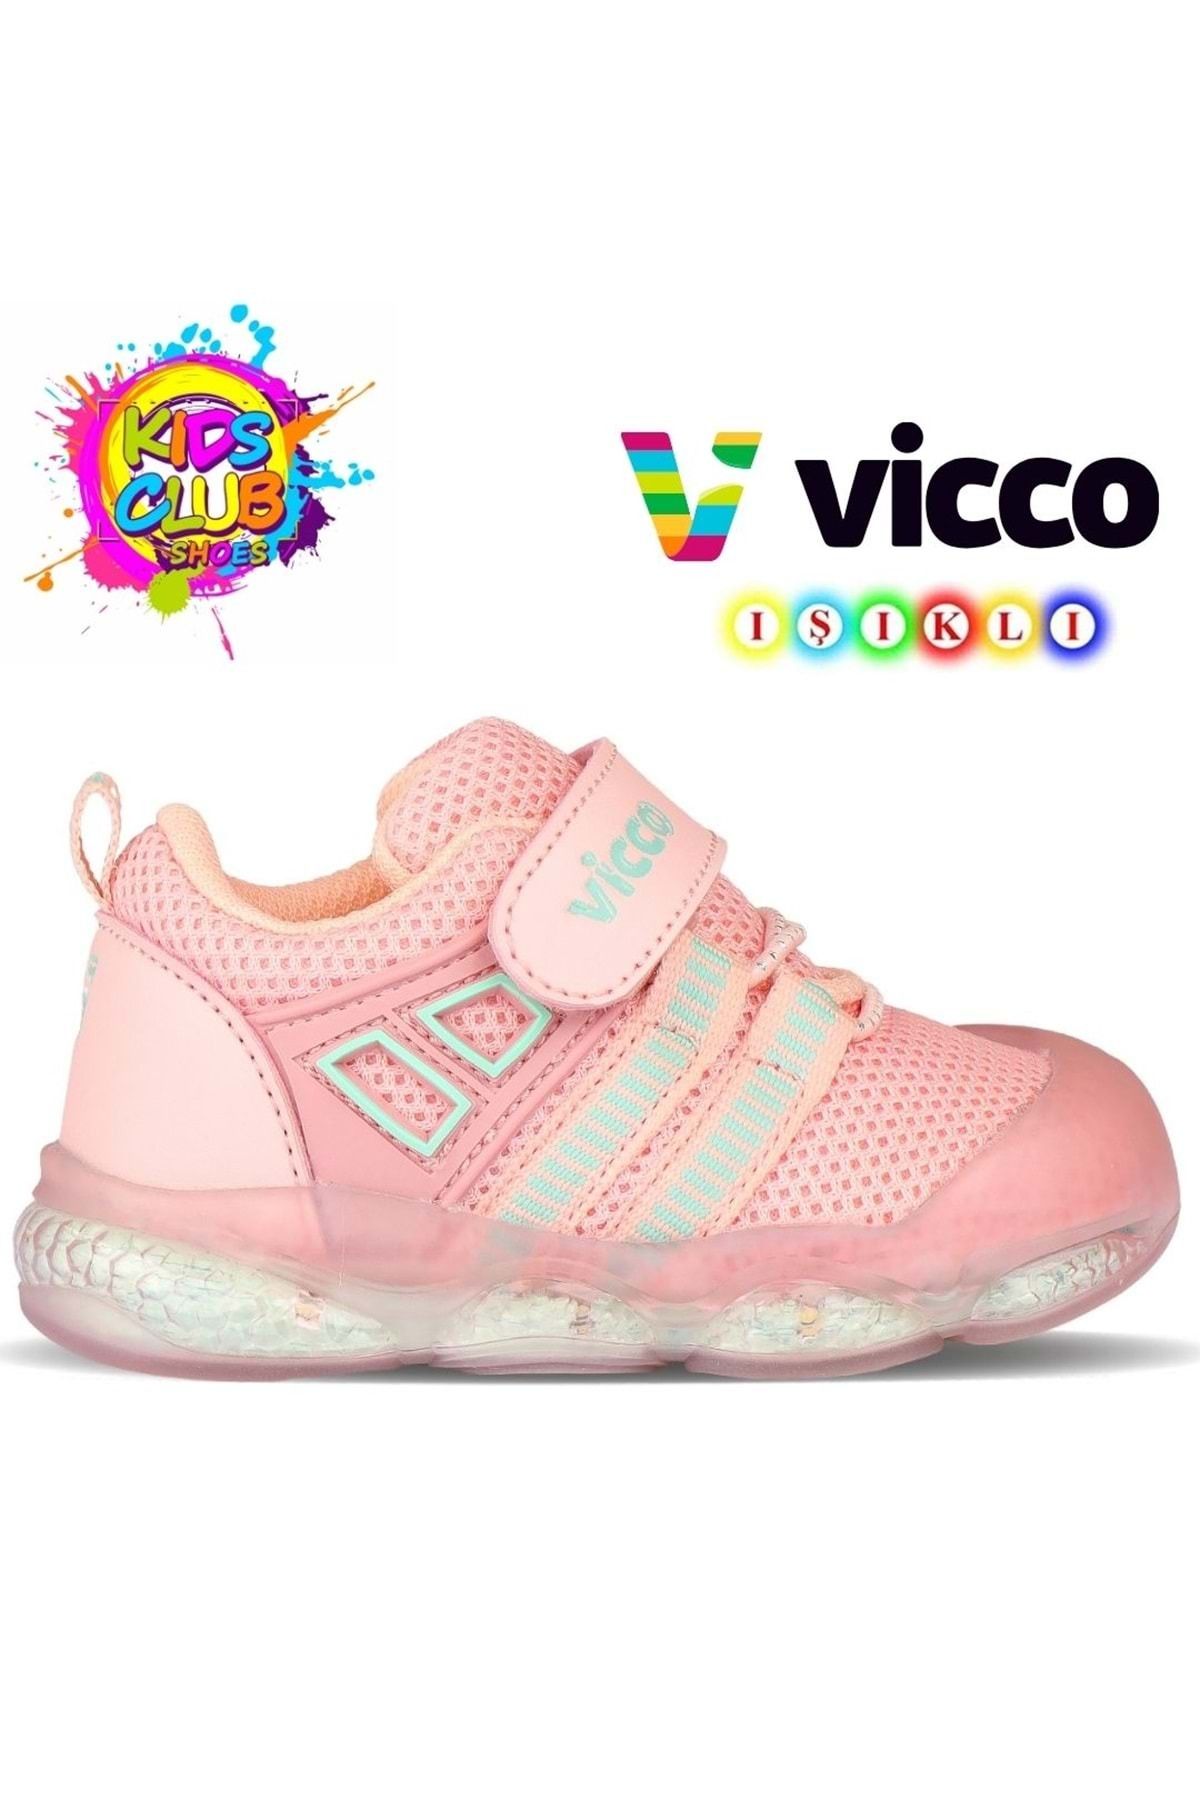 Kids Club Shoes Vicco Orante İlk Adım Bebek Ortopedik Çocuk Spor Ayakkabı PUDRA